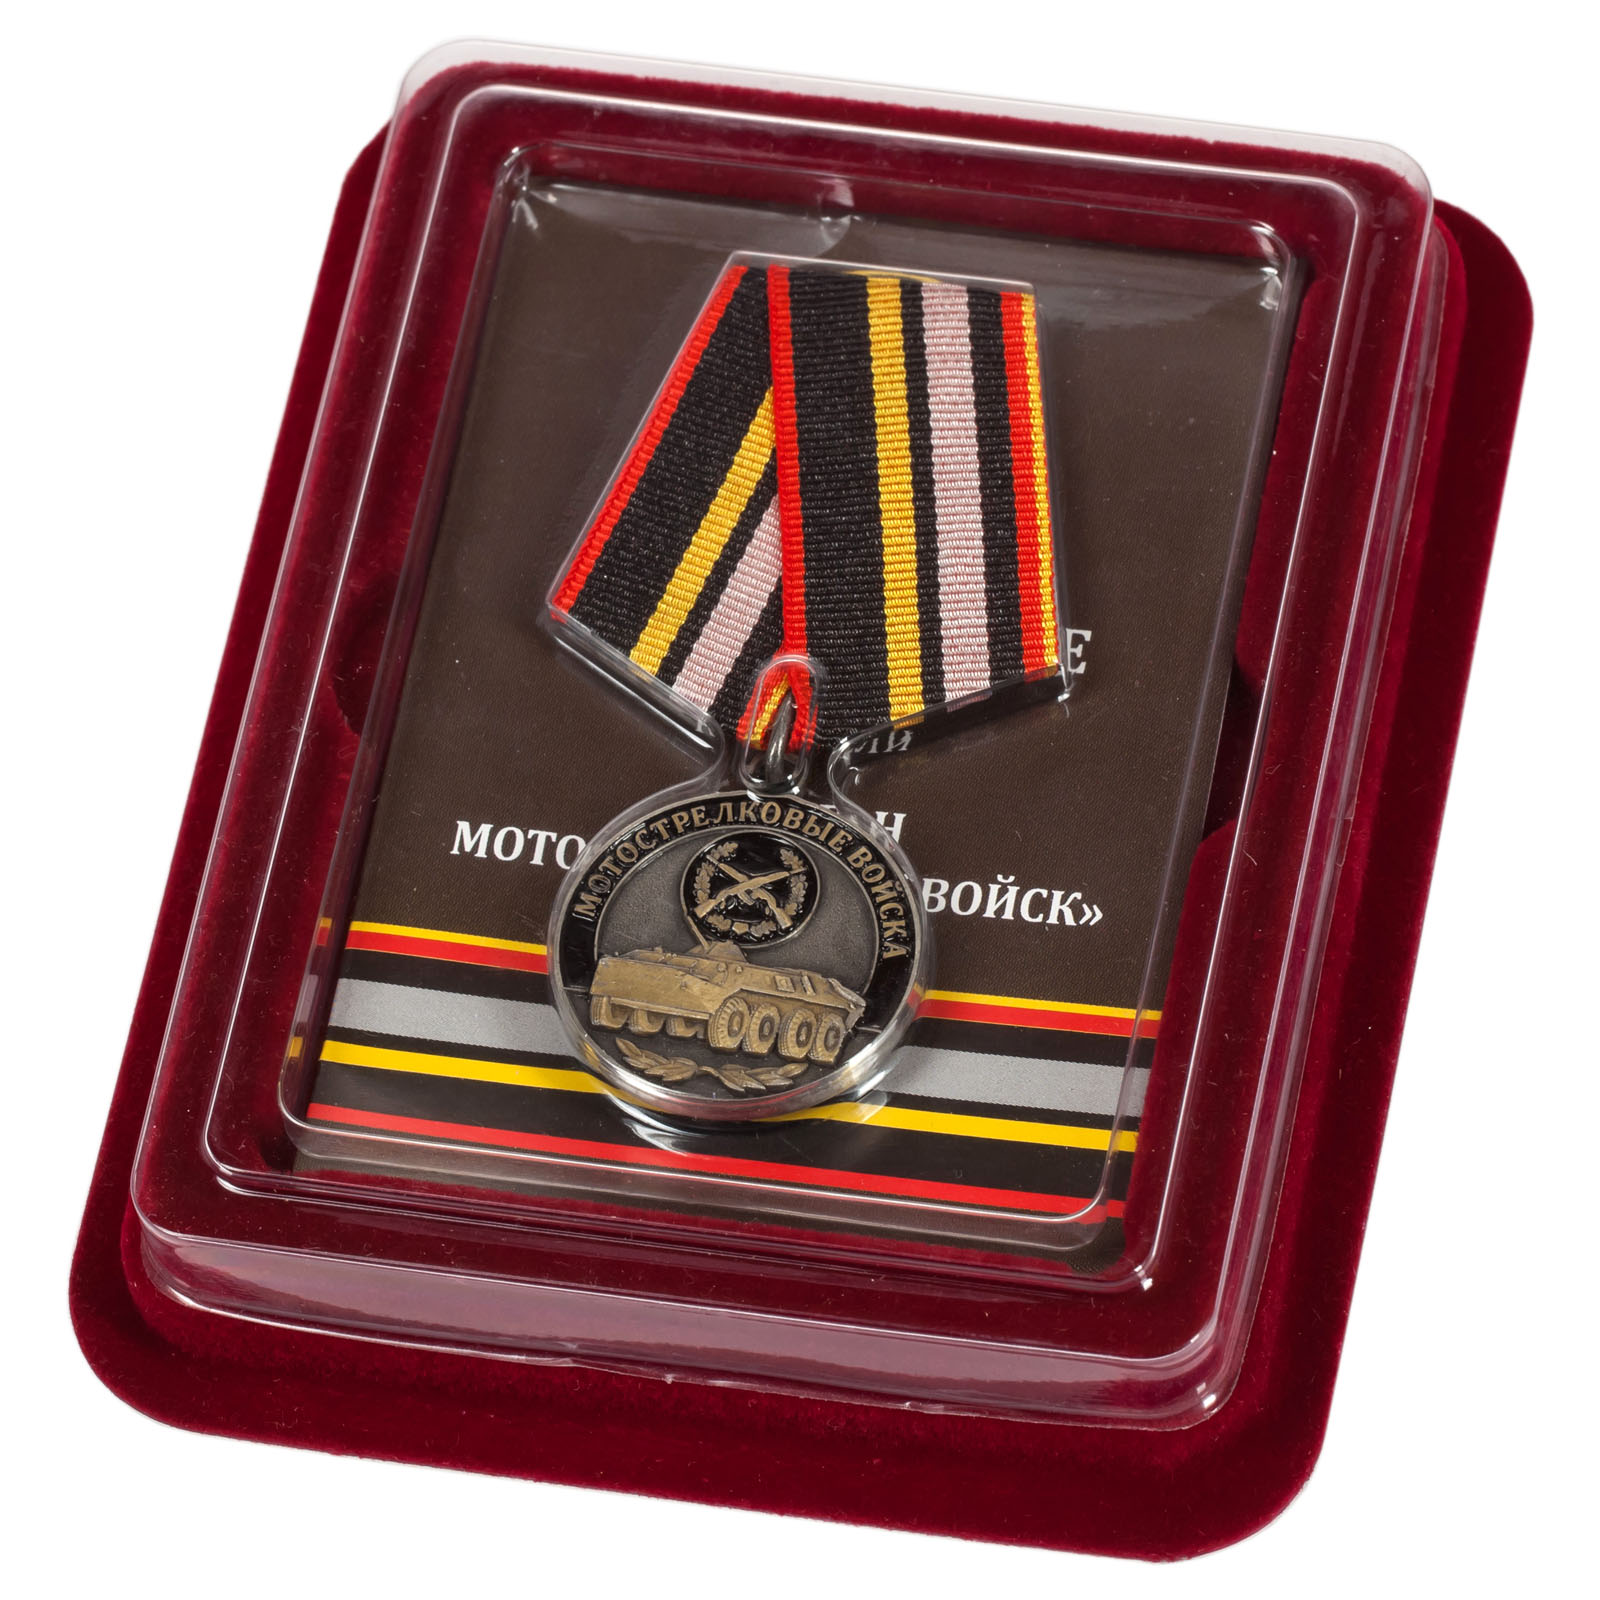 Купить медаль "Ветеран Мотострелковых войск" в наградном футляре